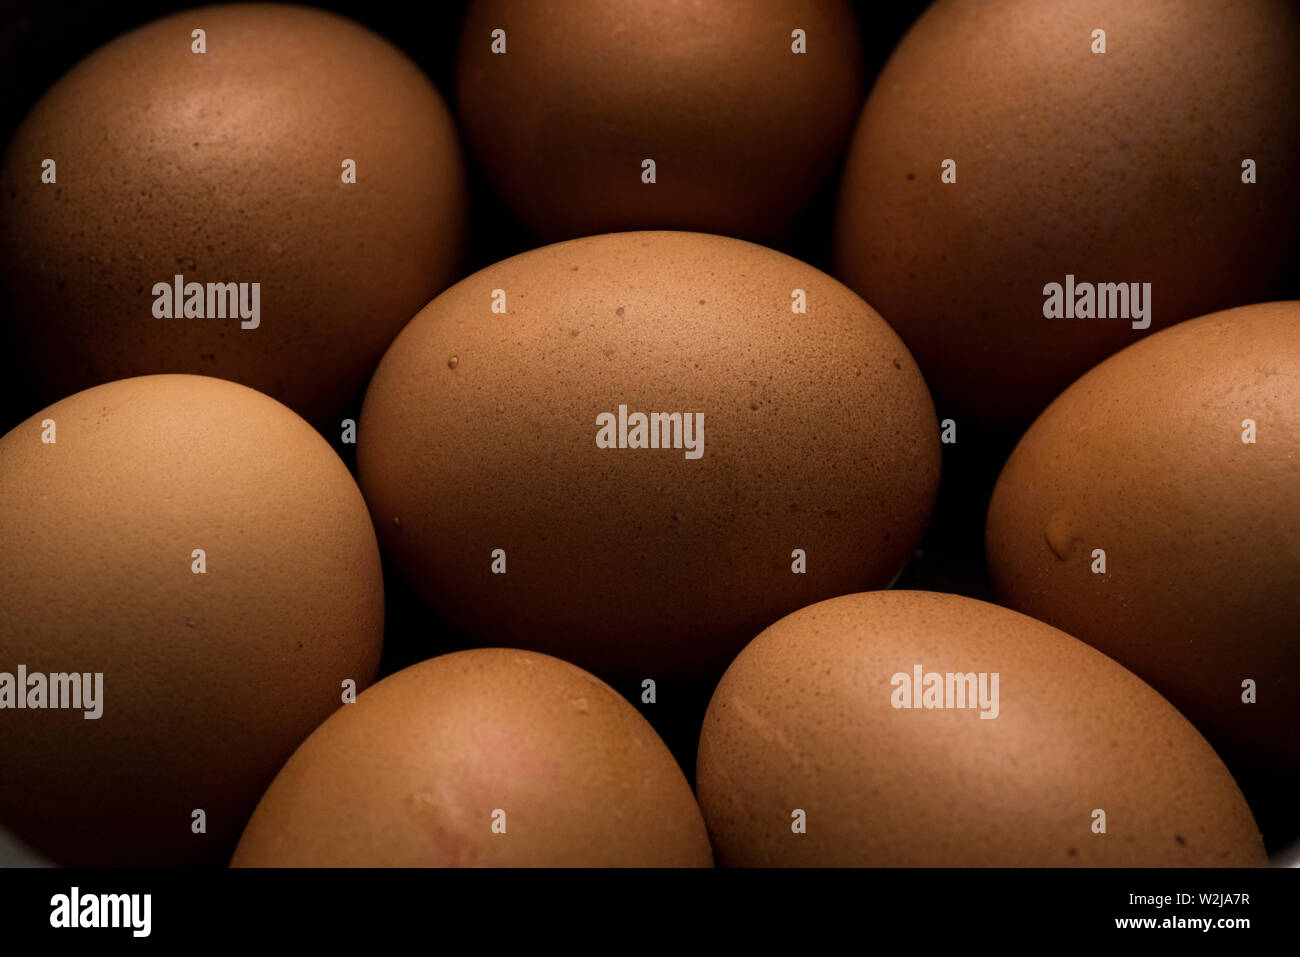 Una disposizione di otto uova di colore marrone. Foto Stock